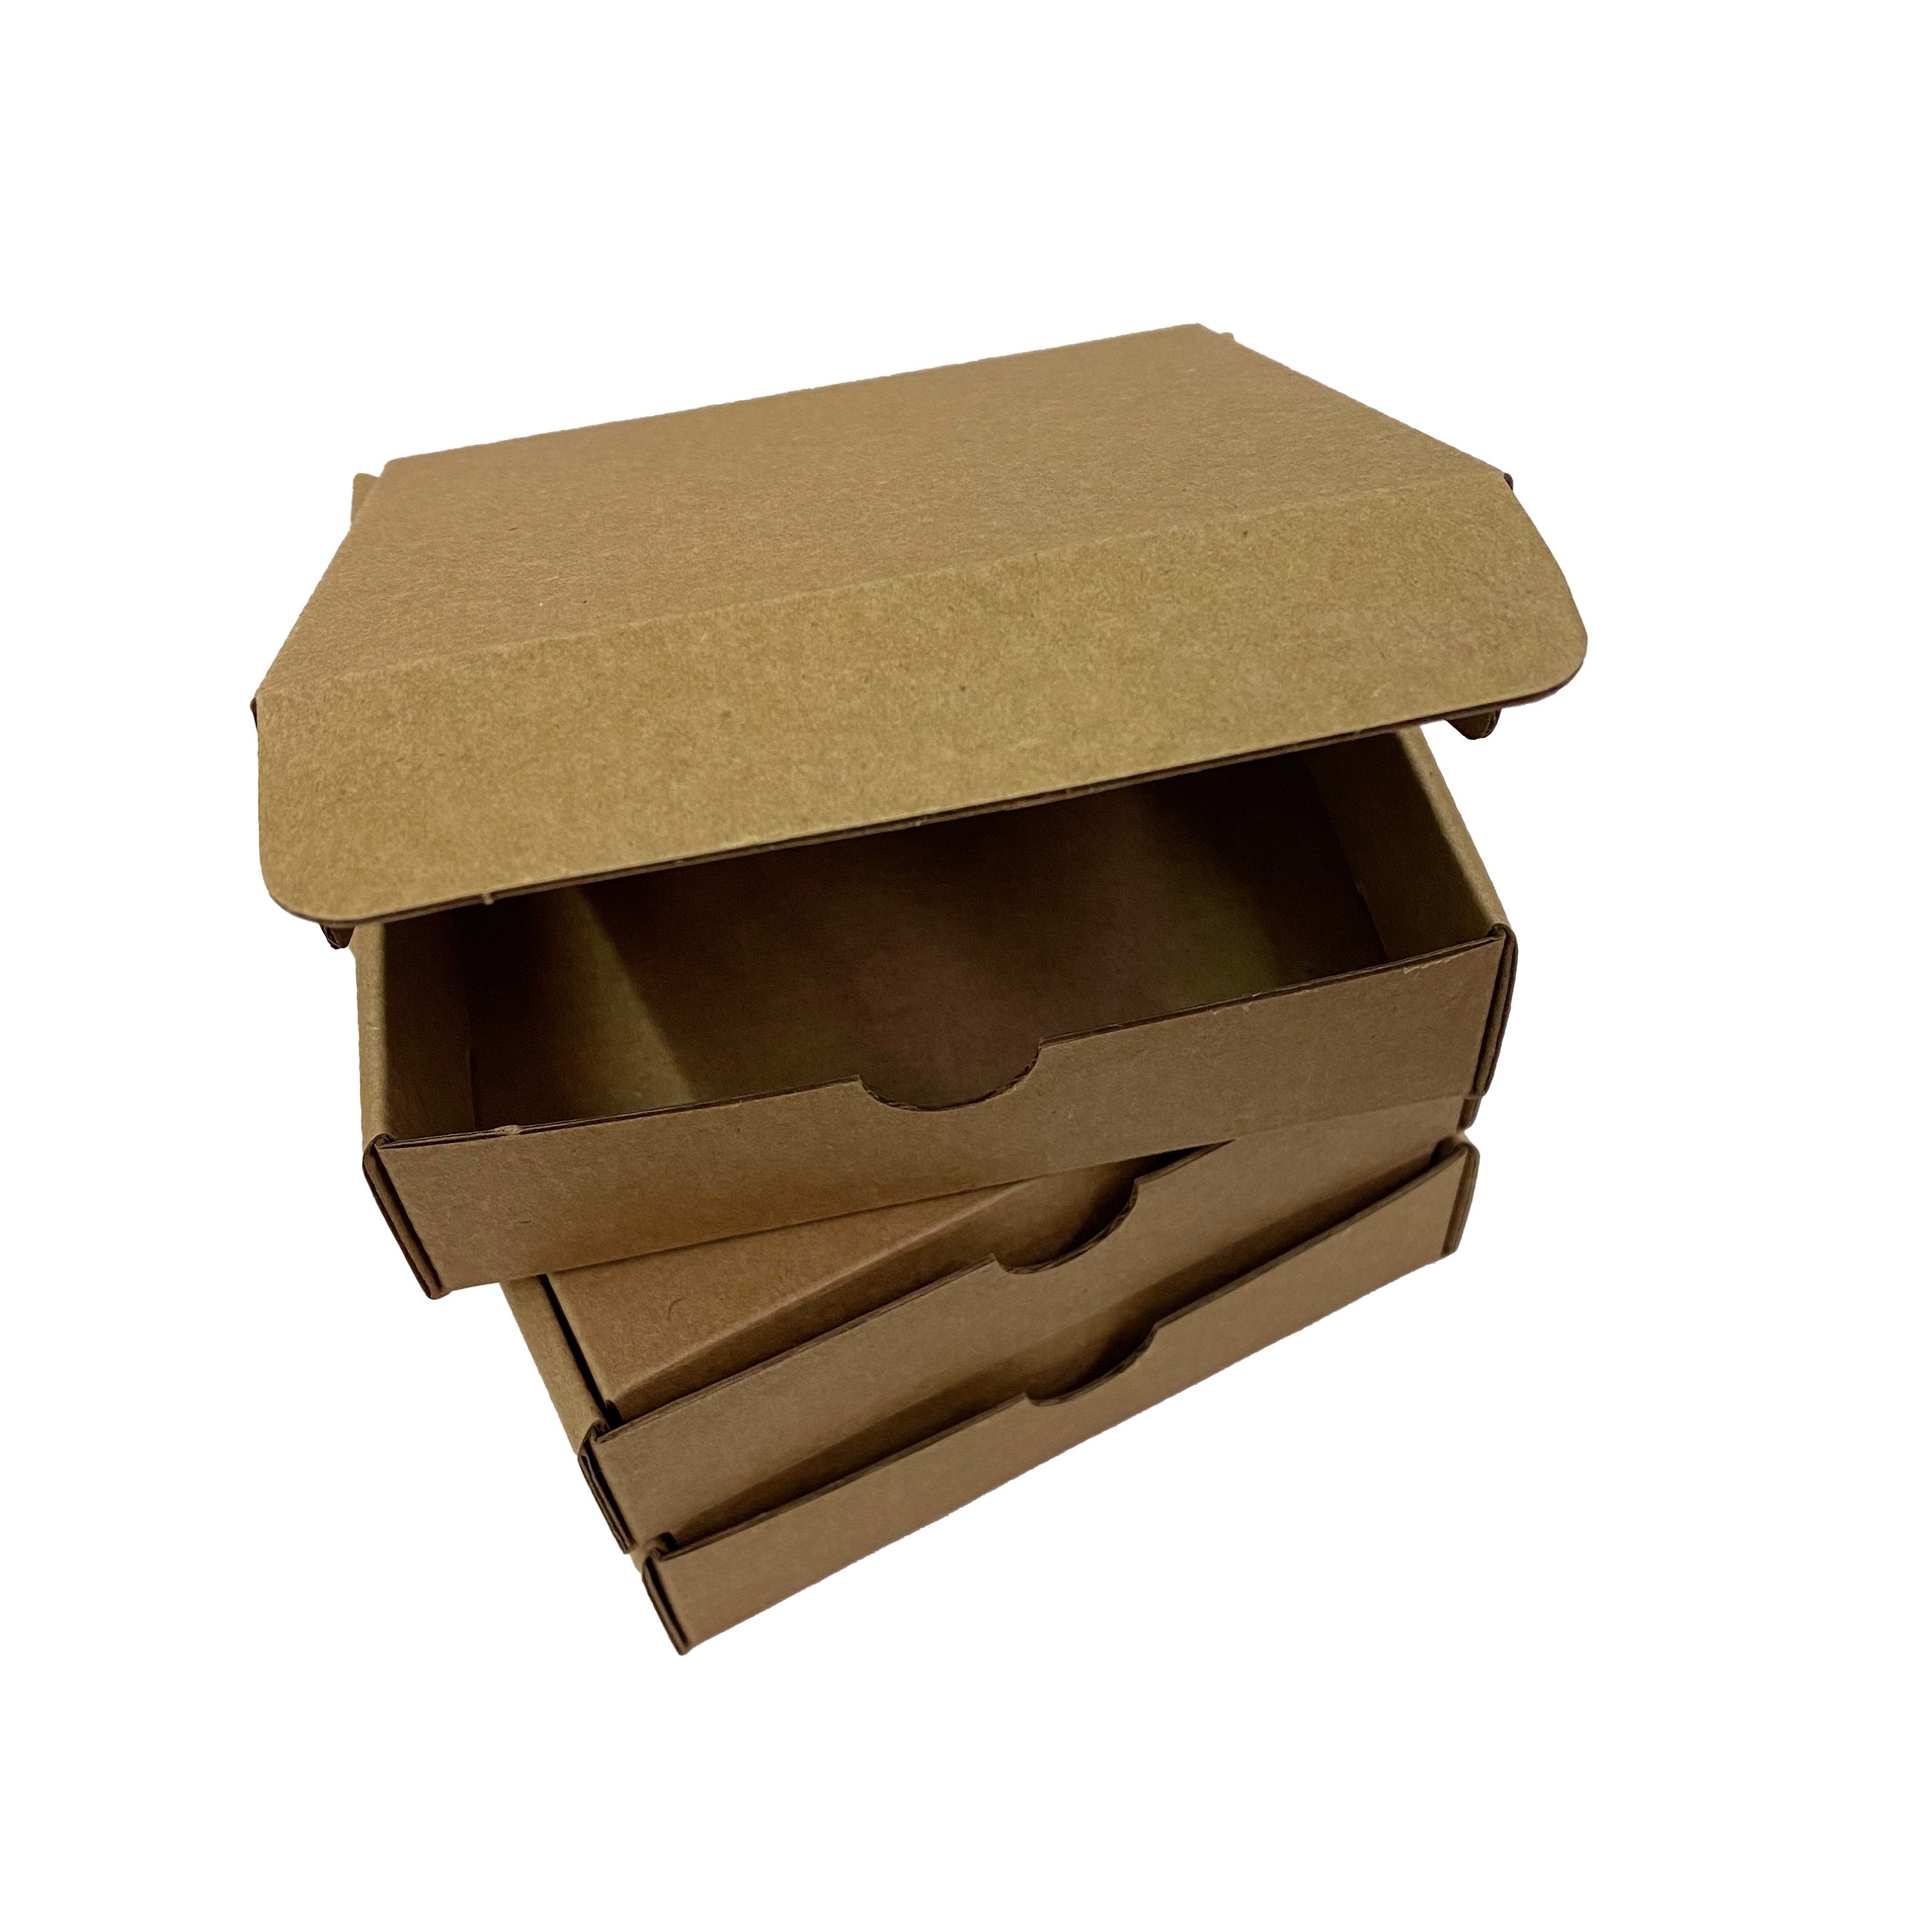 Kraft Paper Mini Pizza Box - 3 1/2 x 3 1/2 x 3/4 - 100 count box